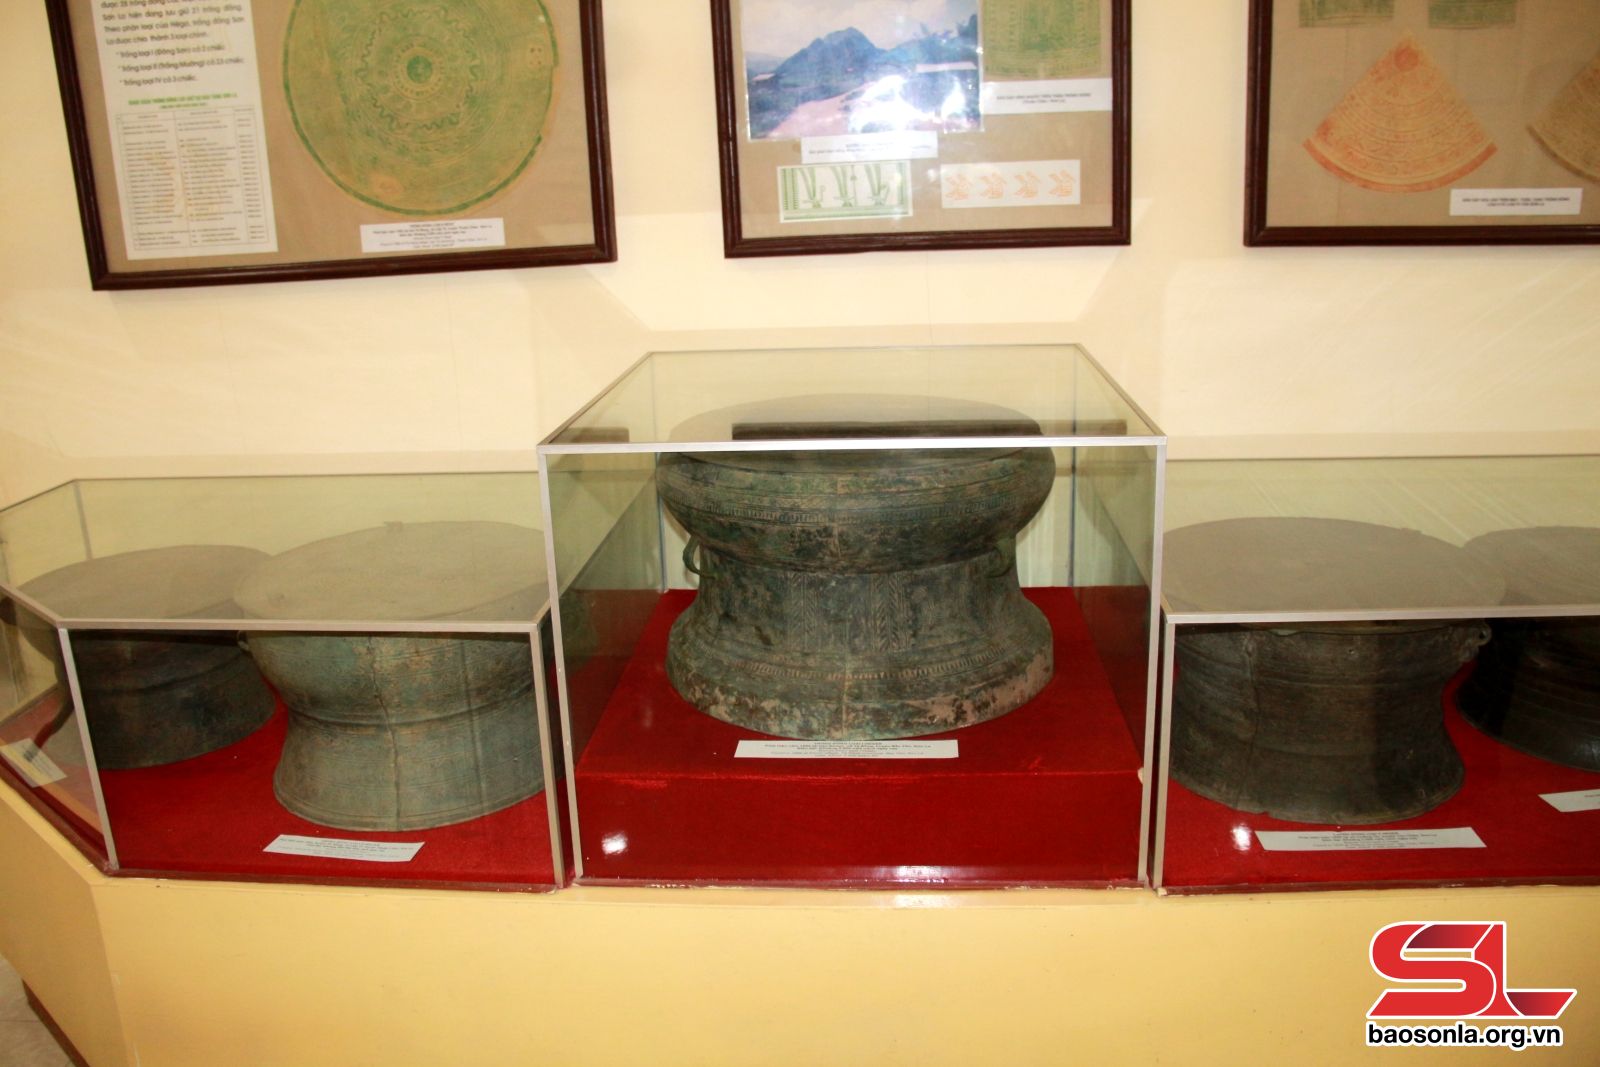 Bảo vệ và phát huy giá trị bộ sưu tập cổ vật trống đồng tỉnh Sơn La - Ảnh 1.